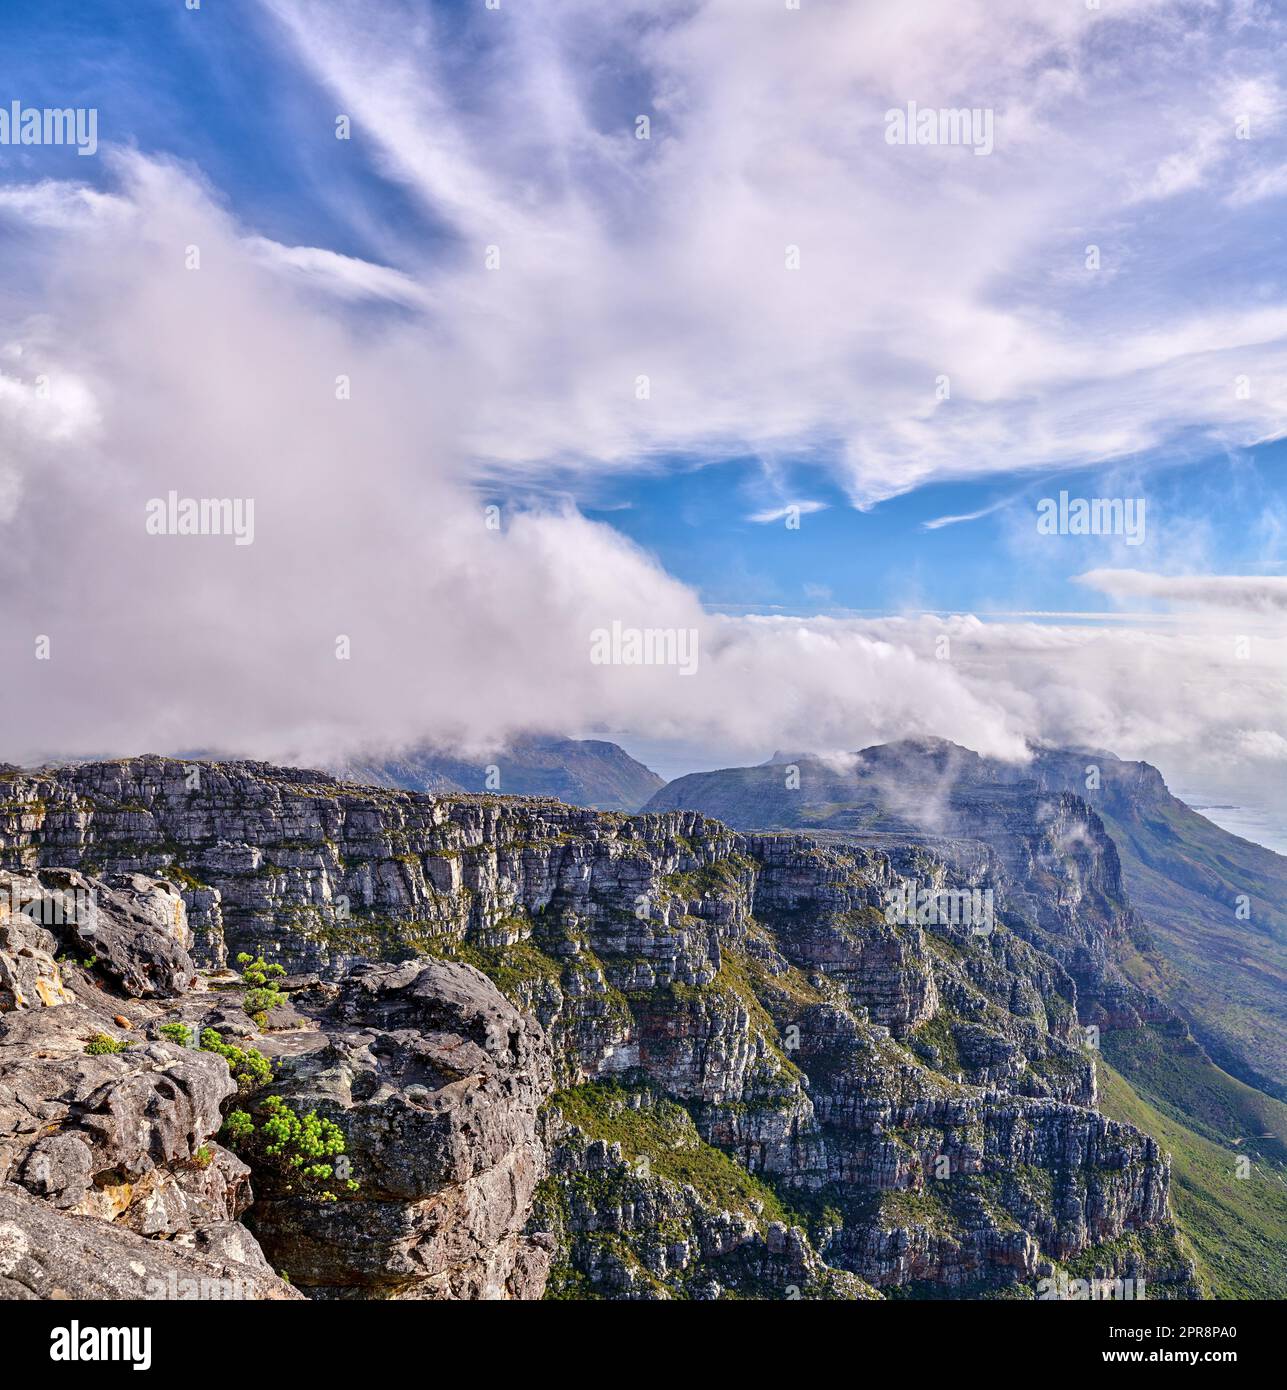 Nuvole spesse che si formano sulla cima della Table Mountain a città del Capo con il copyspace. Terreno roccioso in una giornata di sole con ombre nuvolose, natura tranquilla in armonia con vedute rilassanti di piante e paesaggi Foto Stock